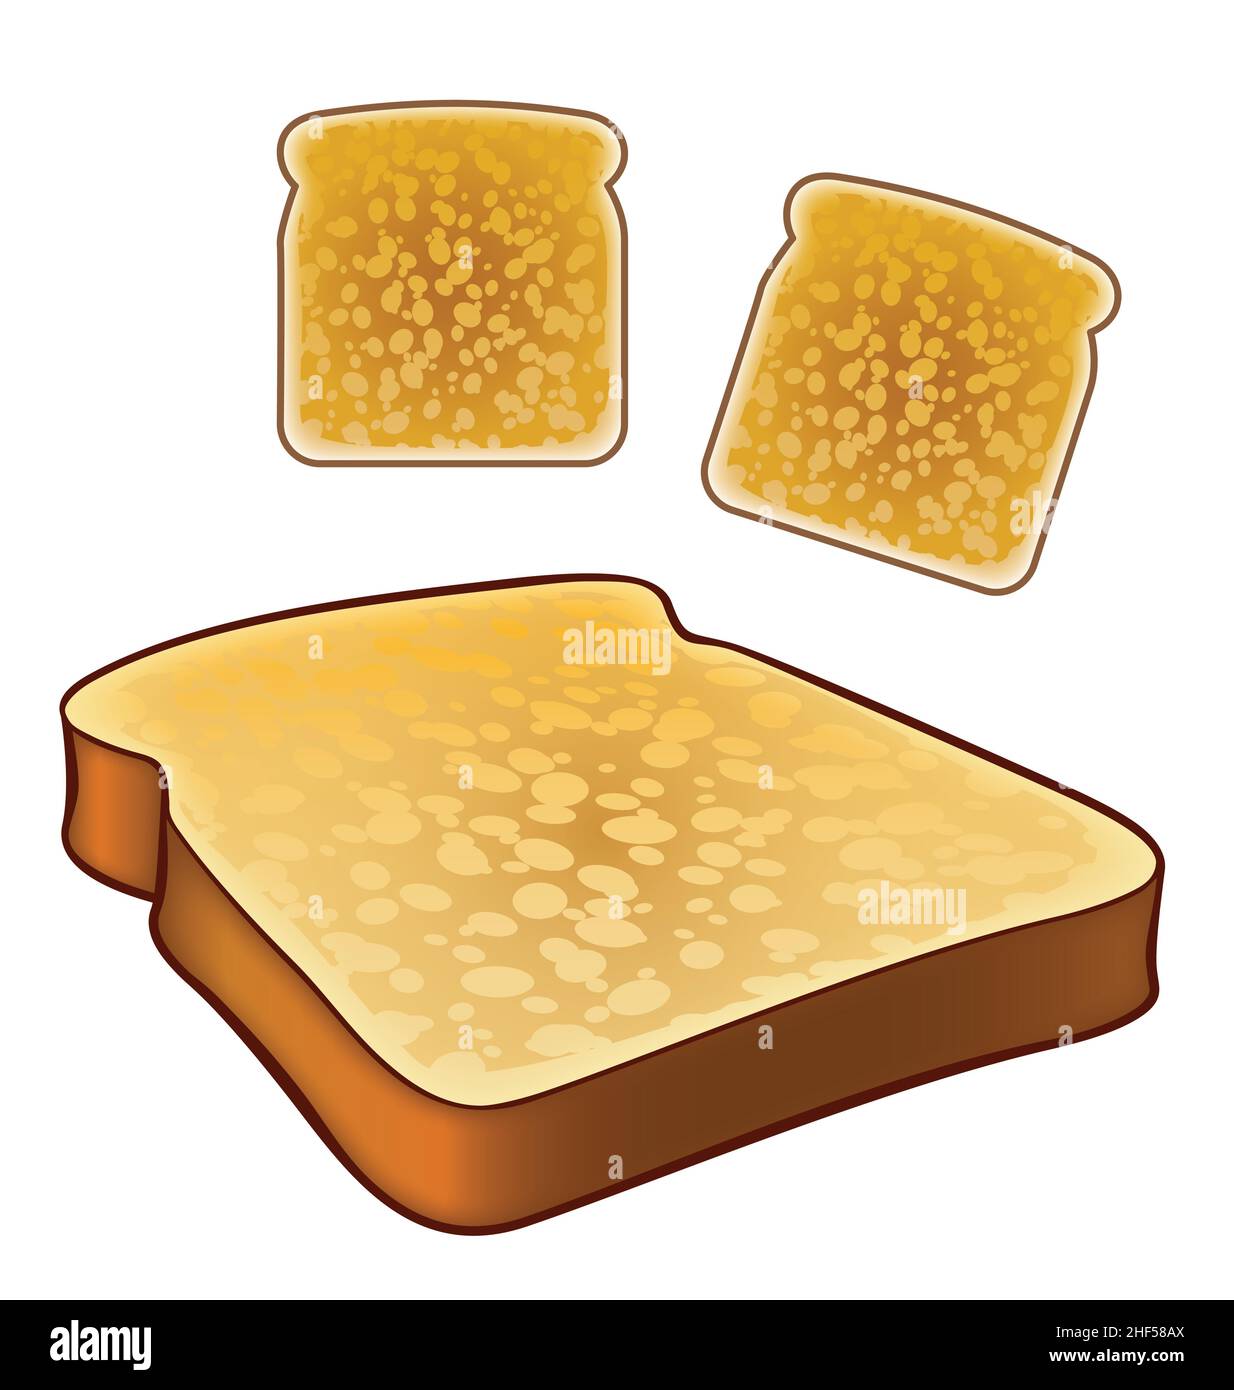 simple dessin animé toast icônes dessus et vue isométrique vecteur isolé sur fond blanc Illustration de Vecteur